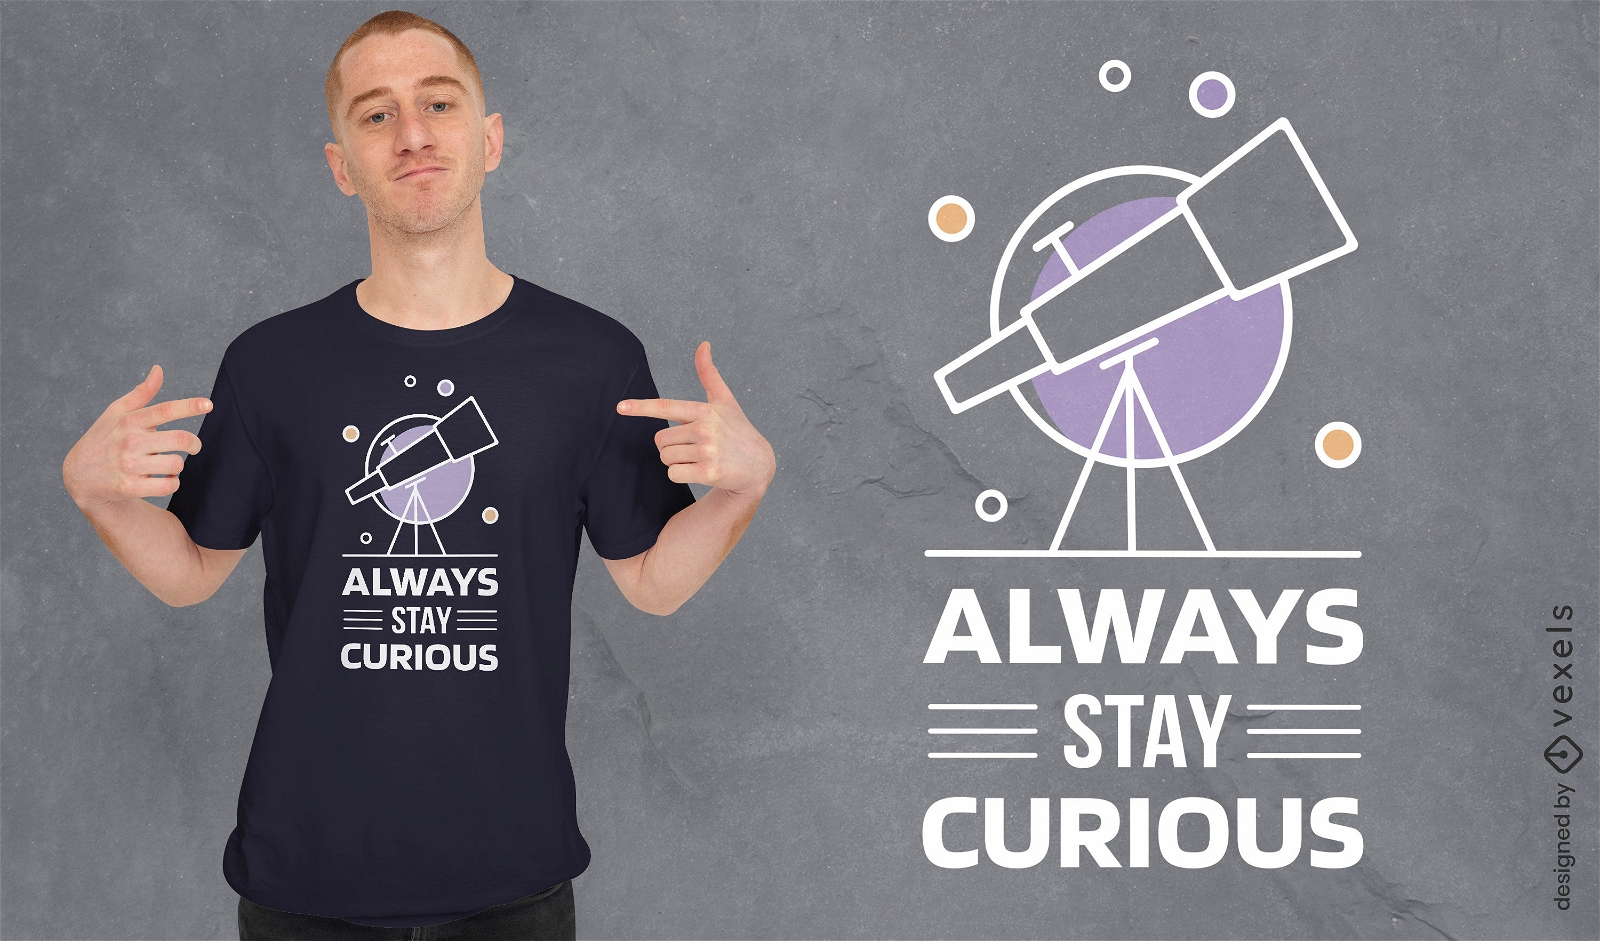 Diseño de camiseta de telescopio de ciencia espacial.